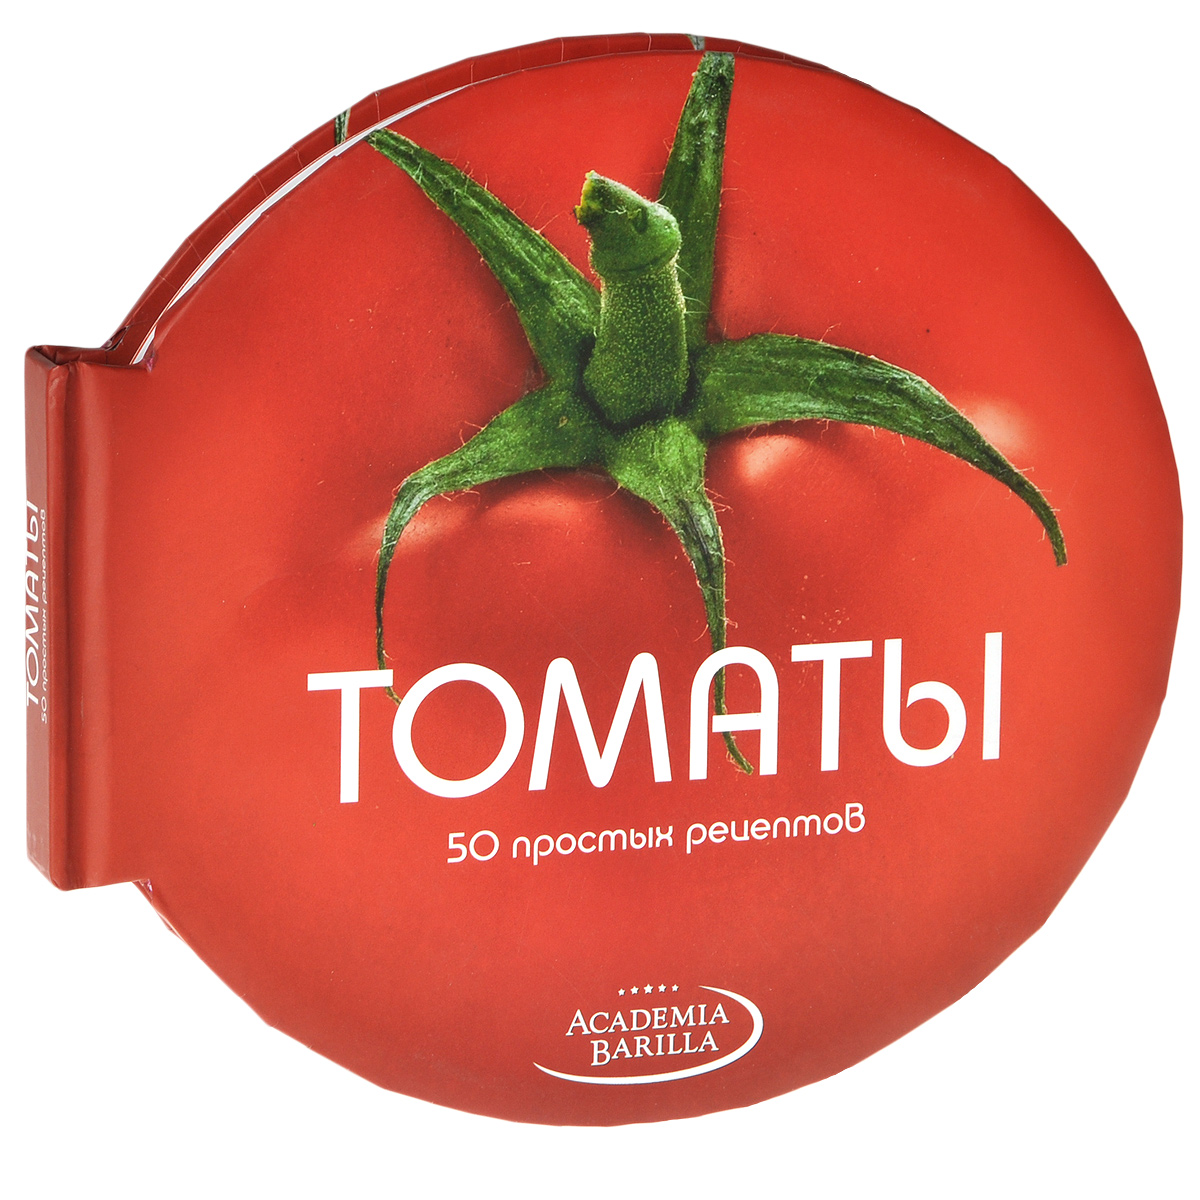 Книга Томаты. 50 простых рецептов - купить книгу от Мария Грация Вилла в книжном интернет магазине OZON.ru с доставкой по выгодной цене